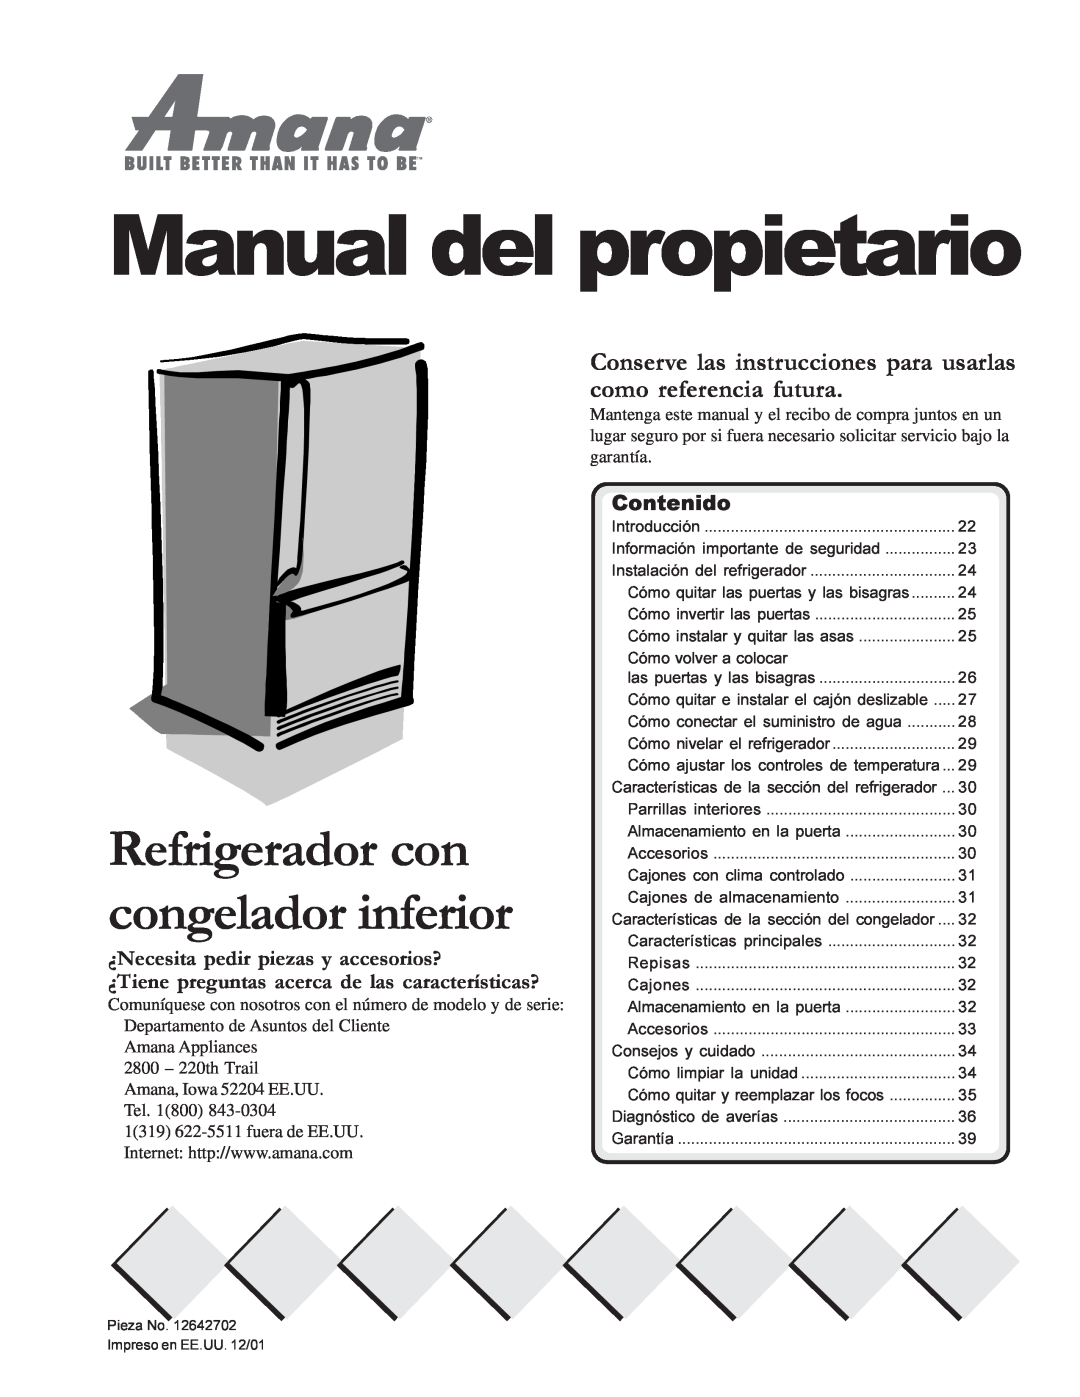 Amana W10175445A Manual del propietario, Refrigerador con congelador inferior, ¿Necesita pedir piezas y accesorios? 